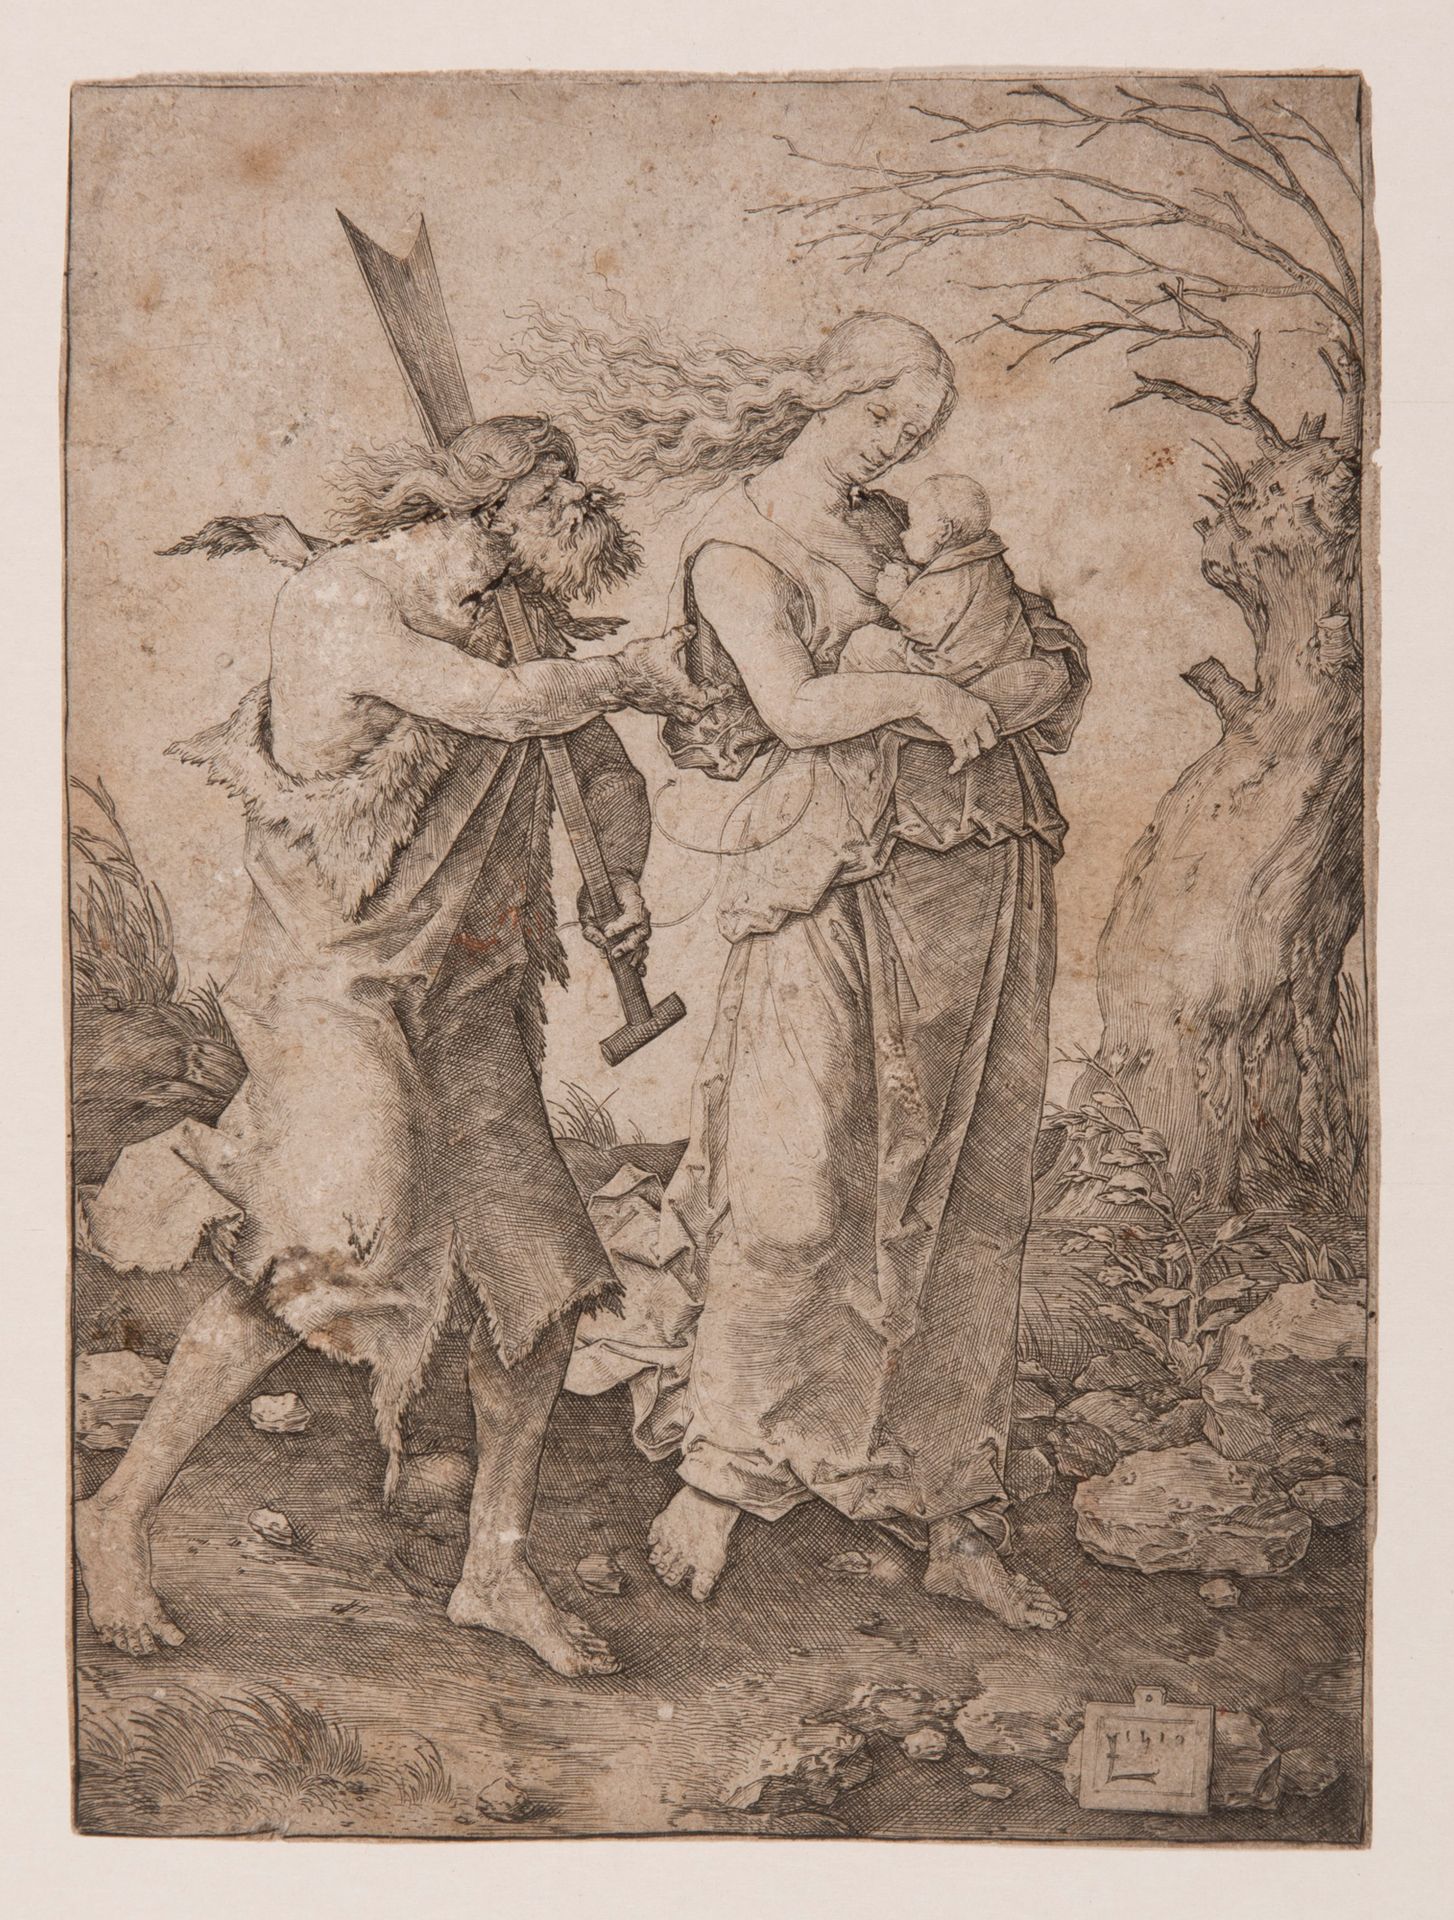 D'après Lucas VAN LEYDEN (1494-1533) 
Adamo ed Eva cacciati dal paradiso, 1510
I&hellip;